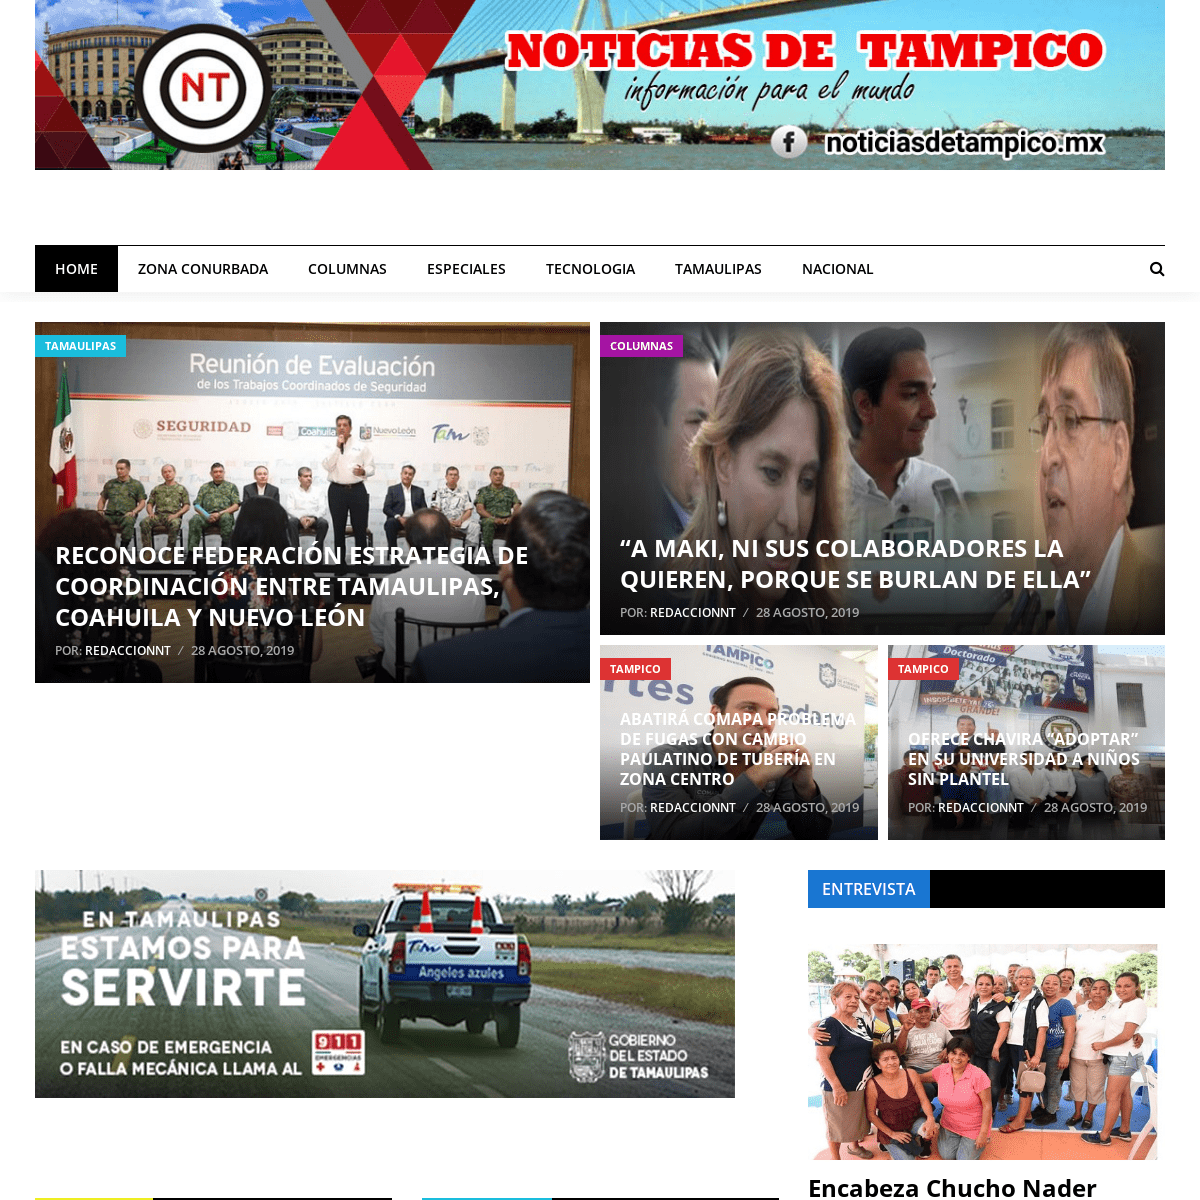 Noticias de Tampico – INFORMACION PARA EL MUNDO